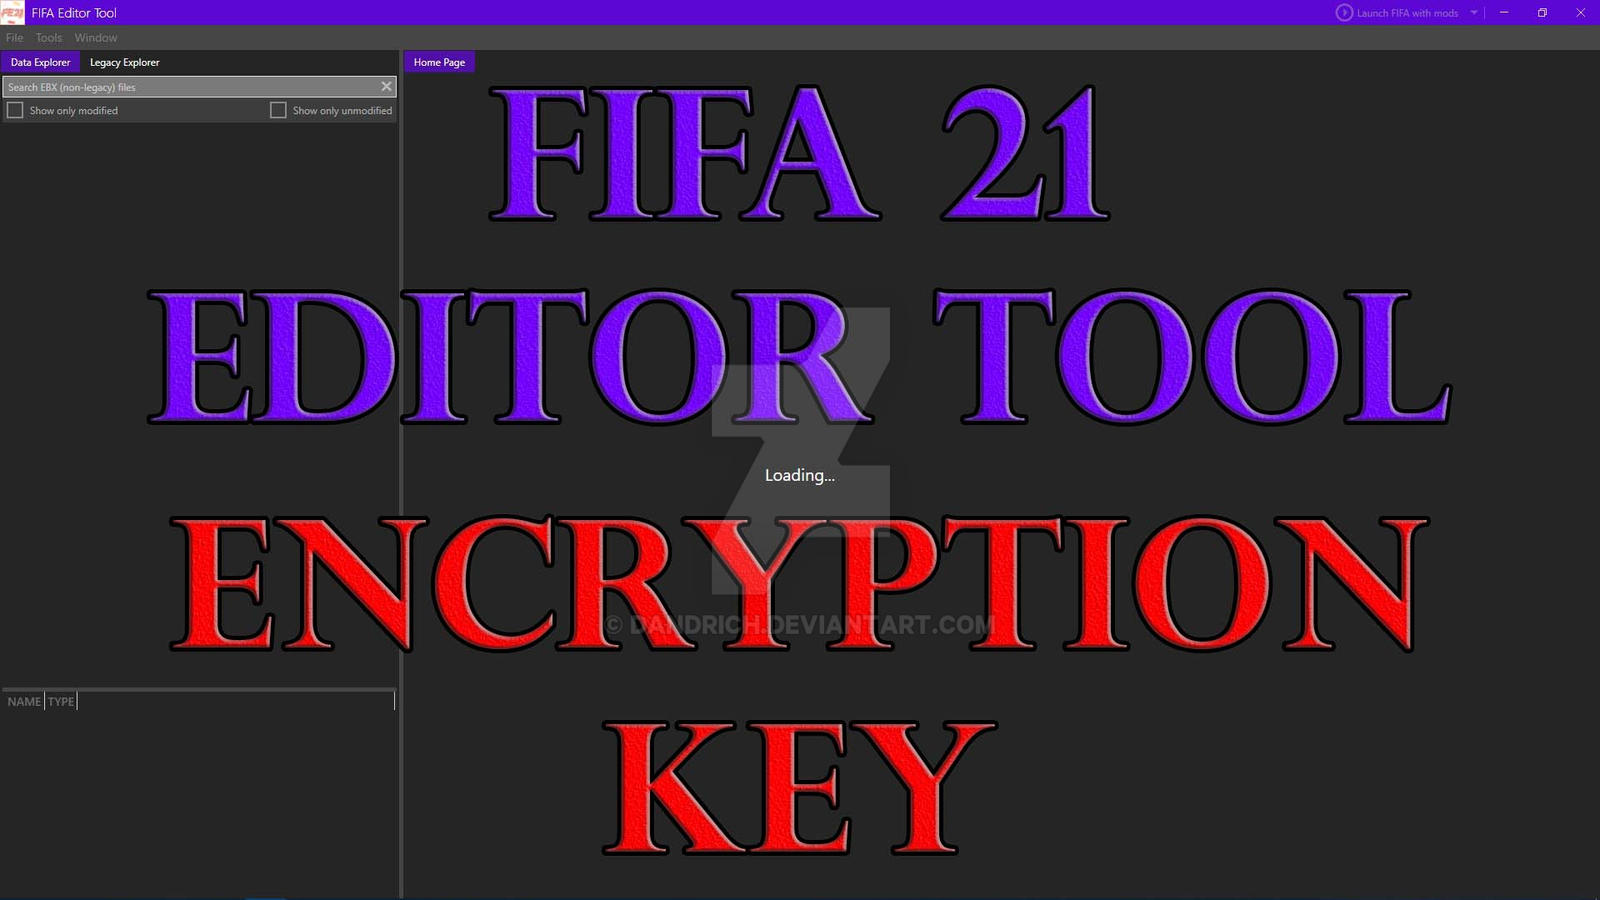 FIFA Editor Tool 22. FIFA 22 Editor Tool Key. FIFA Editor Tool 22 как пользоваться.